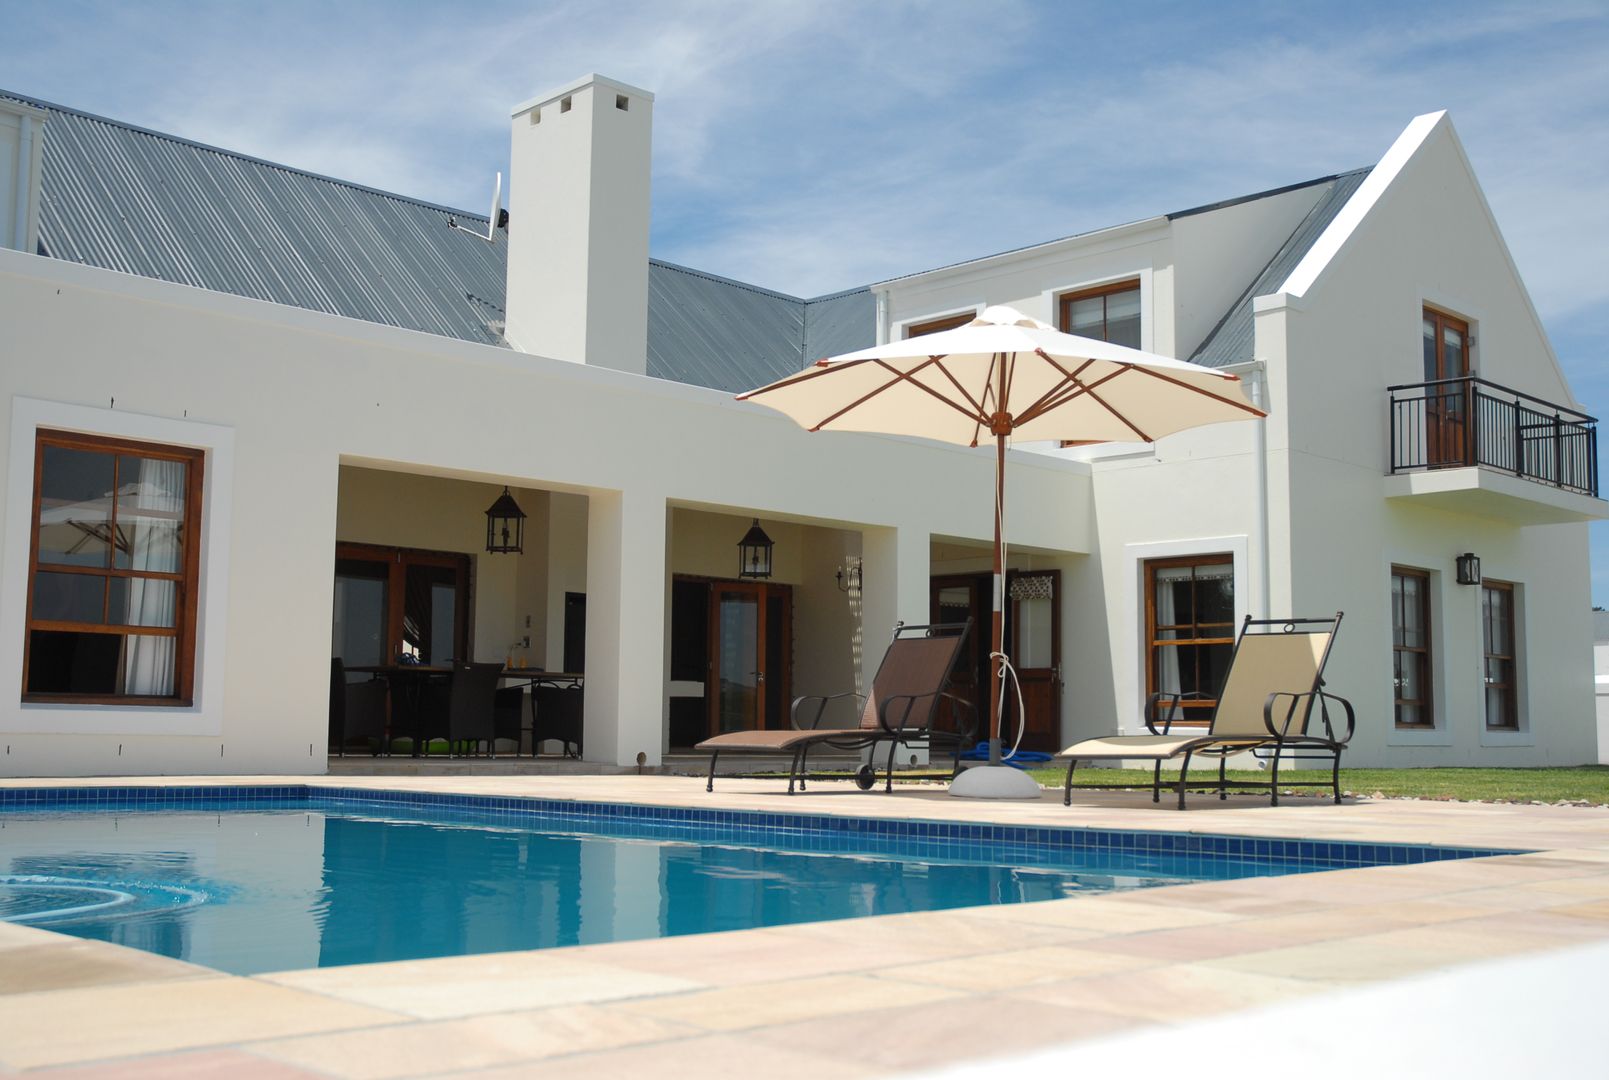 House Grobler, De Zalze Winelands & Golf Estate (Stellenbosch), Reinier Brönn Architects & Associates Reinier Brönn Architects & Associates 미니멀리스트 주택